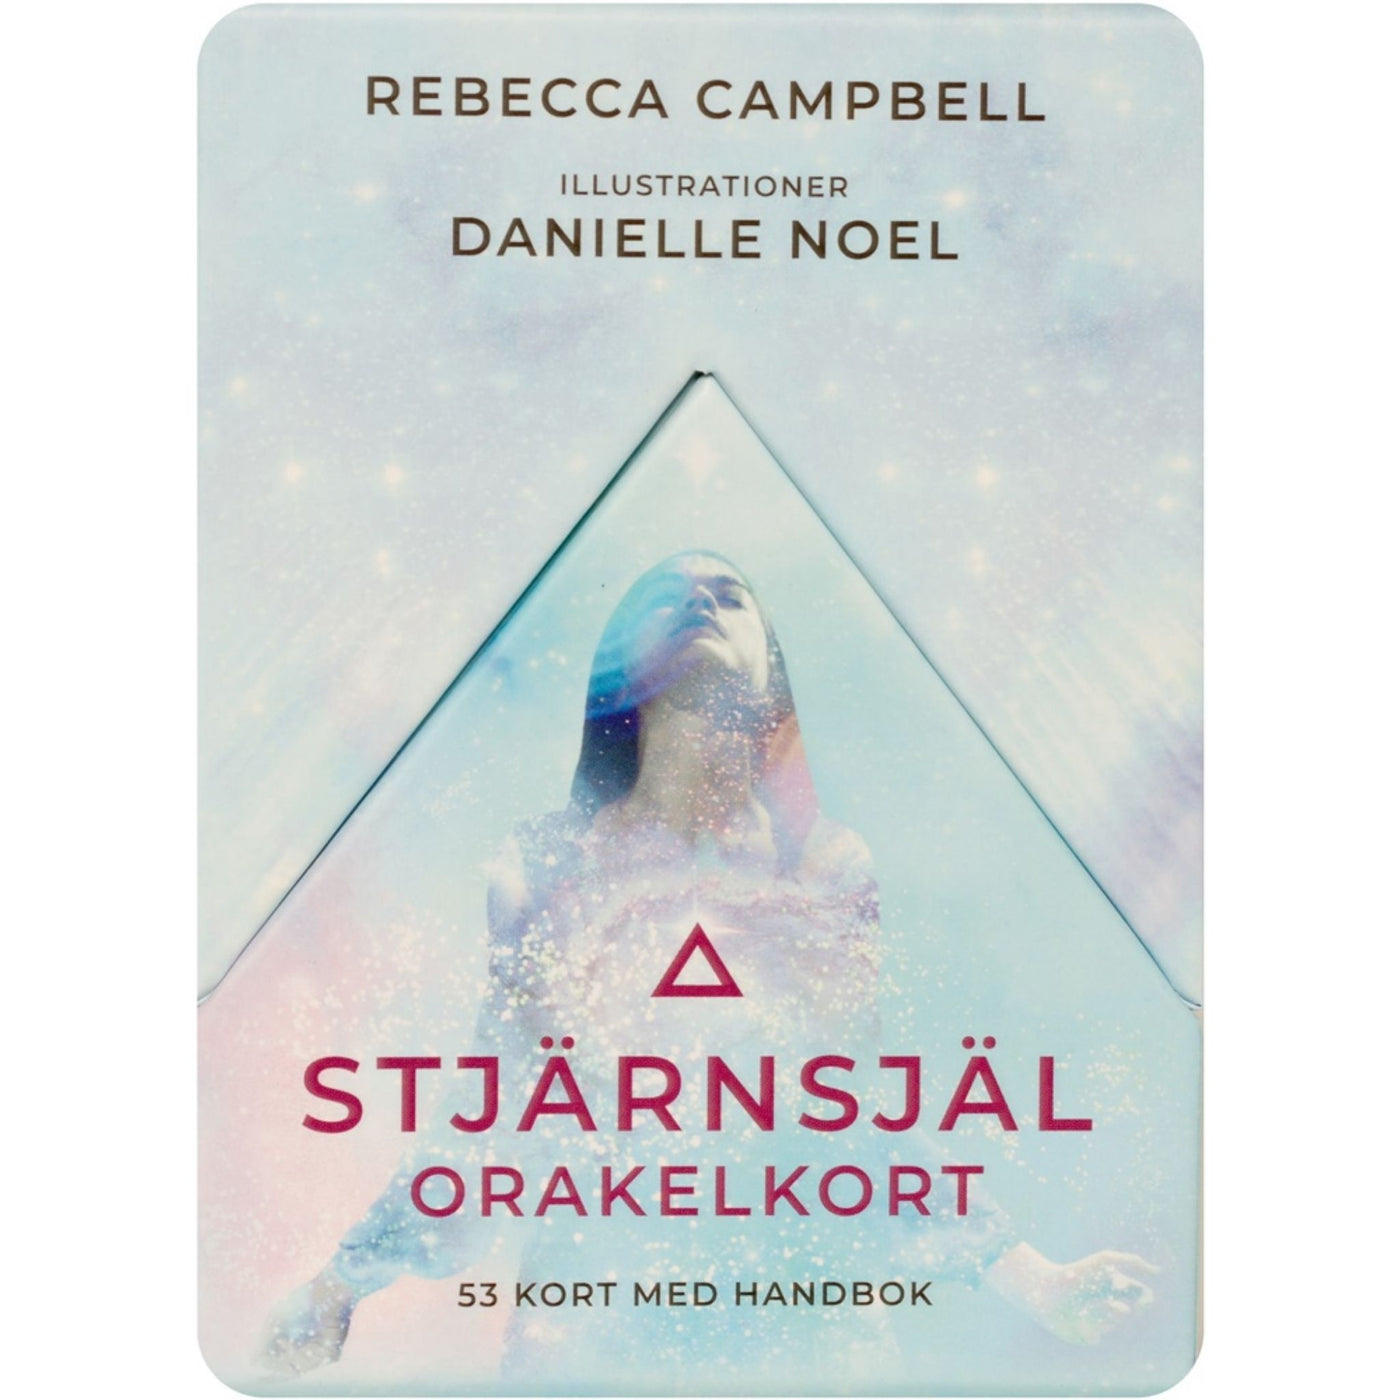 Stjärnsjäl orakelkort - Rebecca Campbell